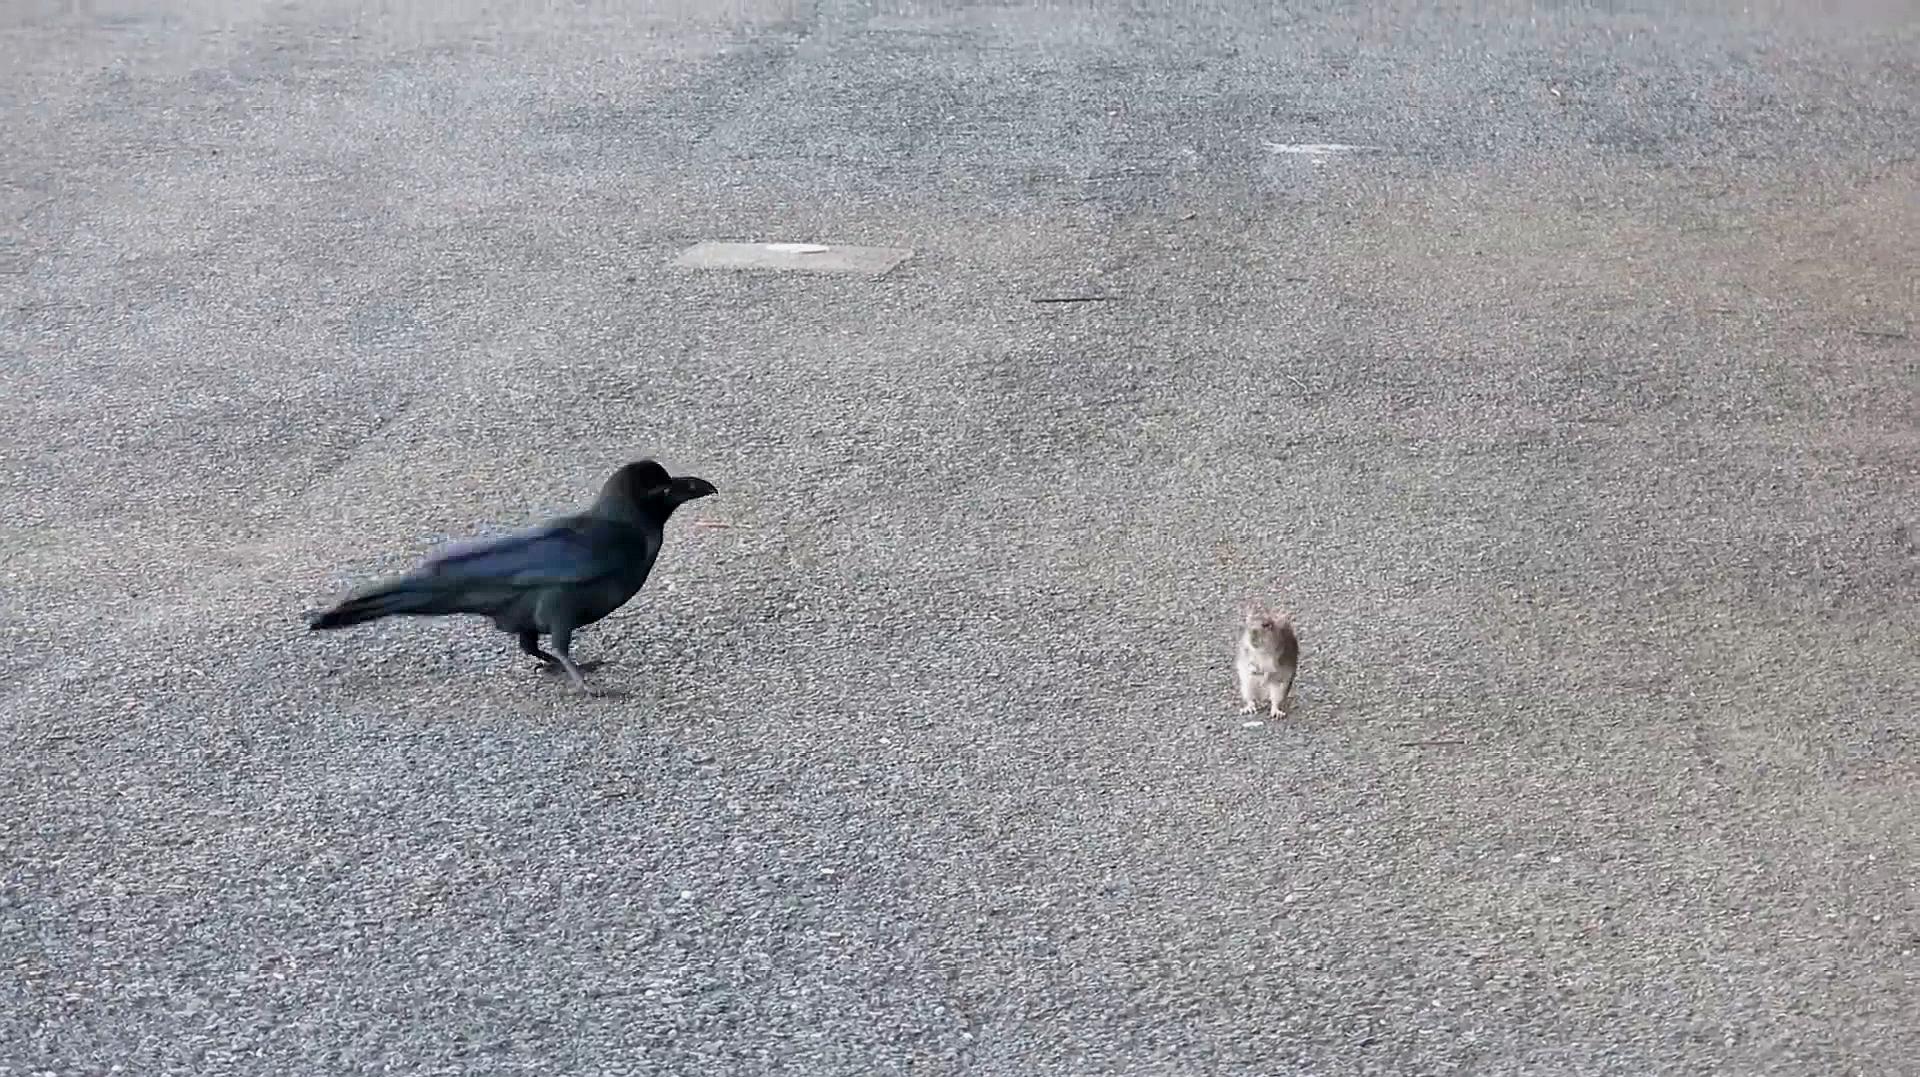 乌鸦在路边发现一只老鼠,接下来请憋住别笑,镜头记录全过程!